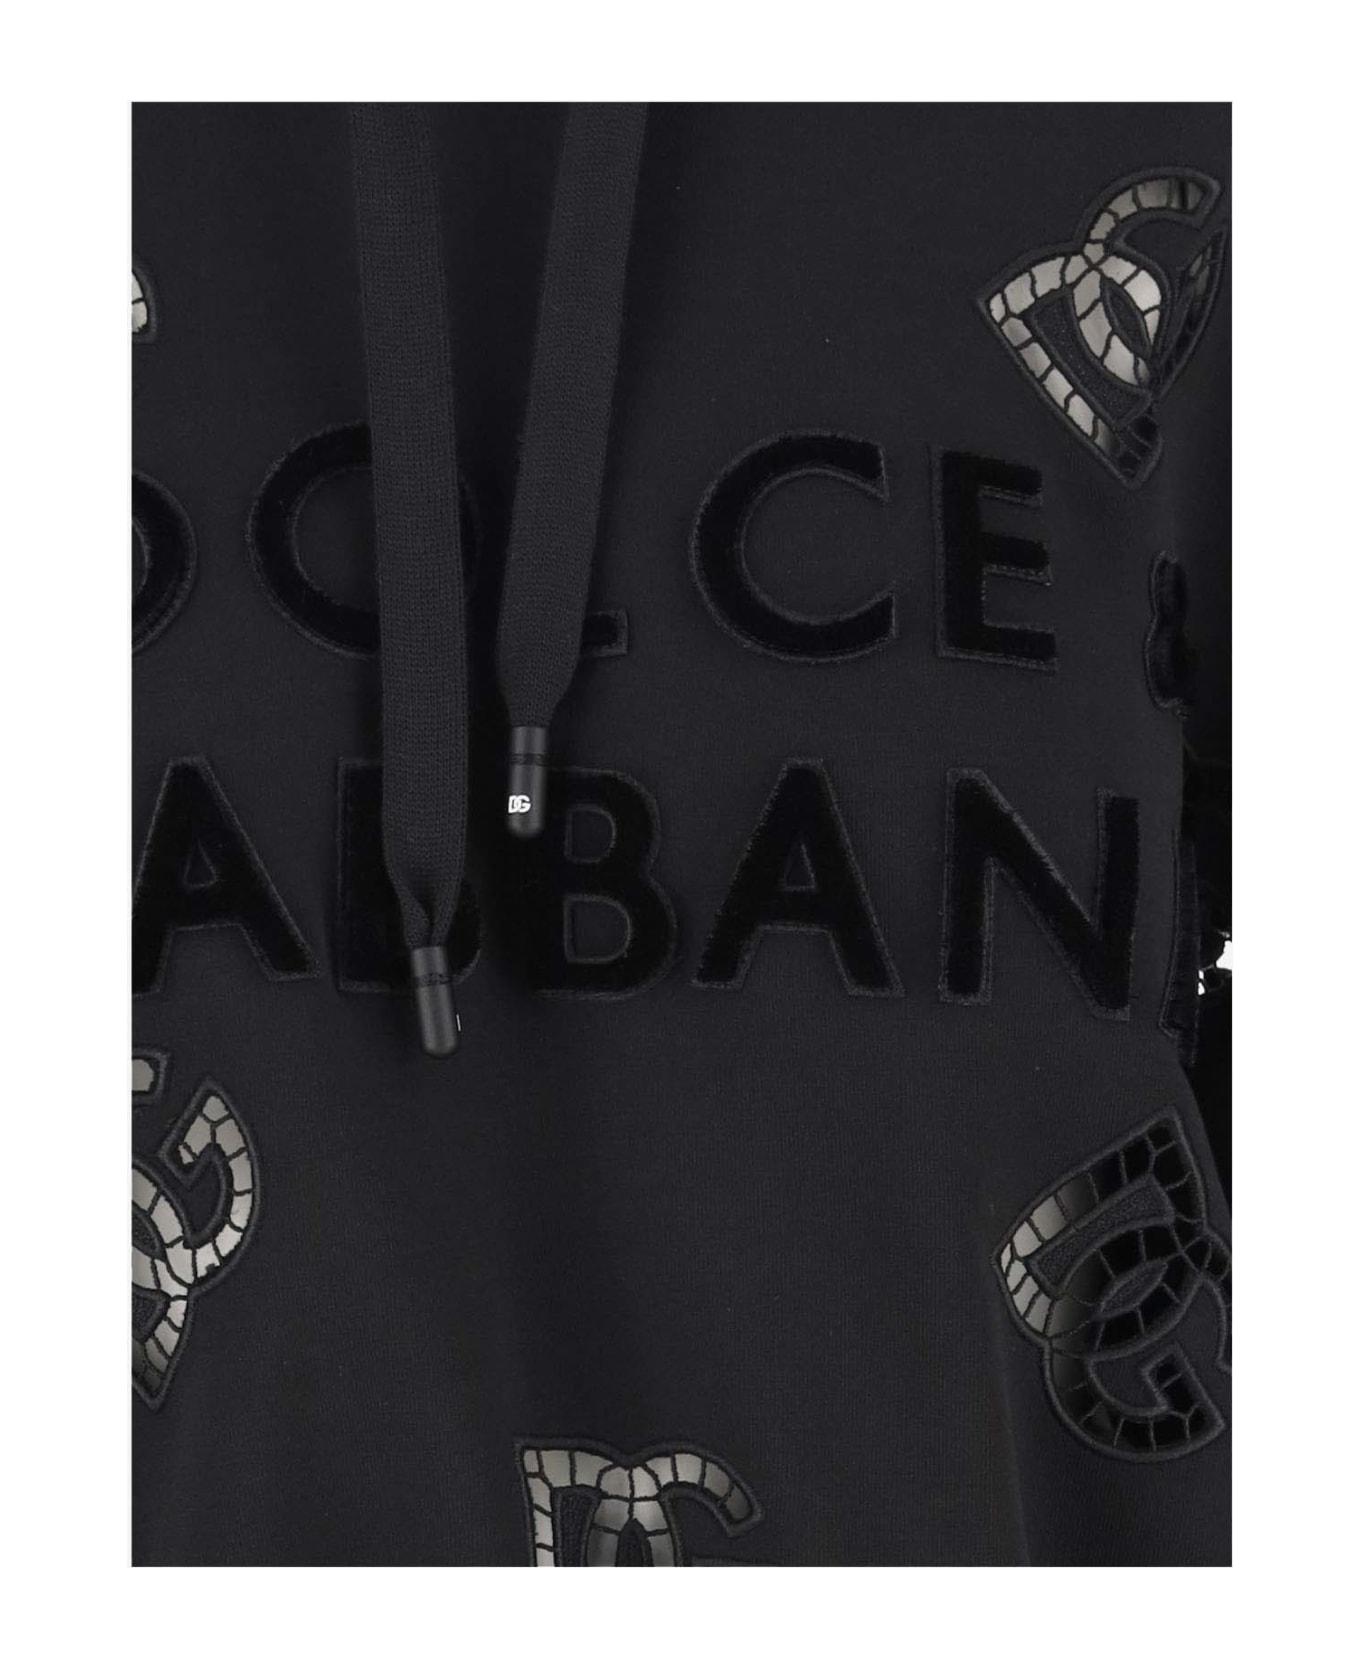 Dolce & Gabbana Logo Cotton Blend Crop Hoodie - Black フリース